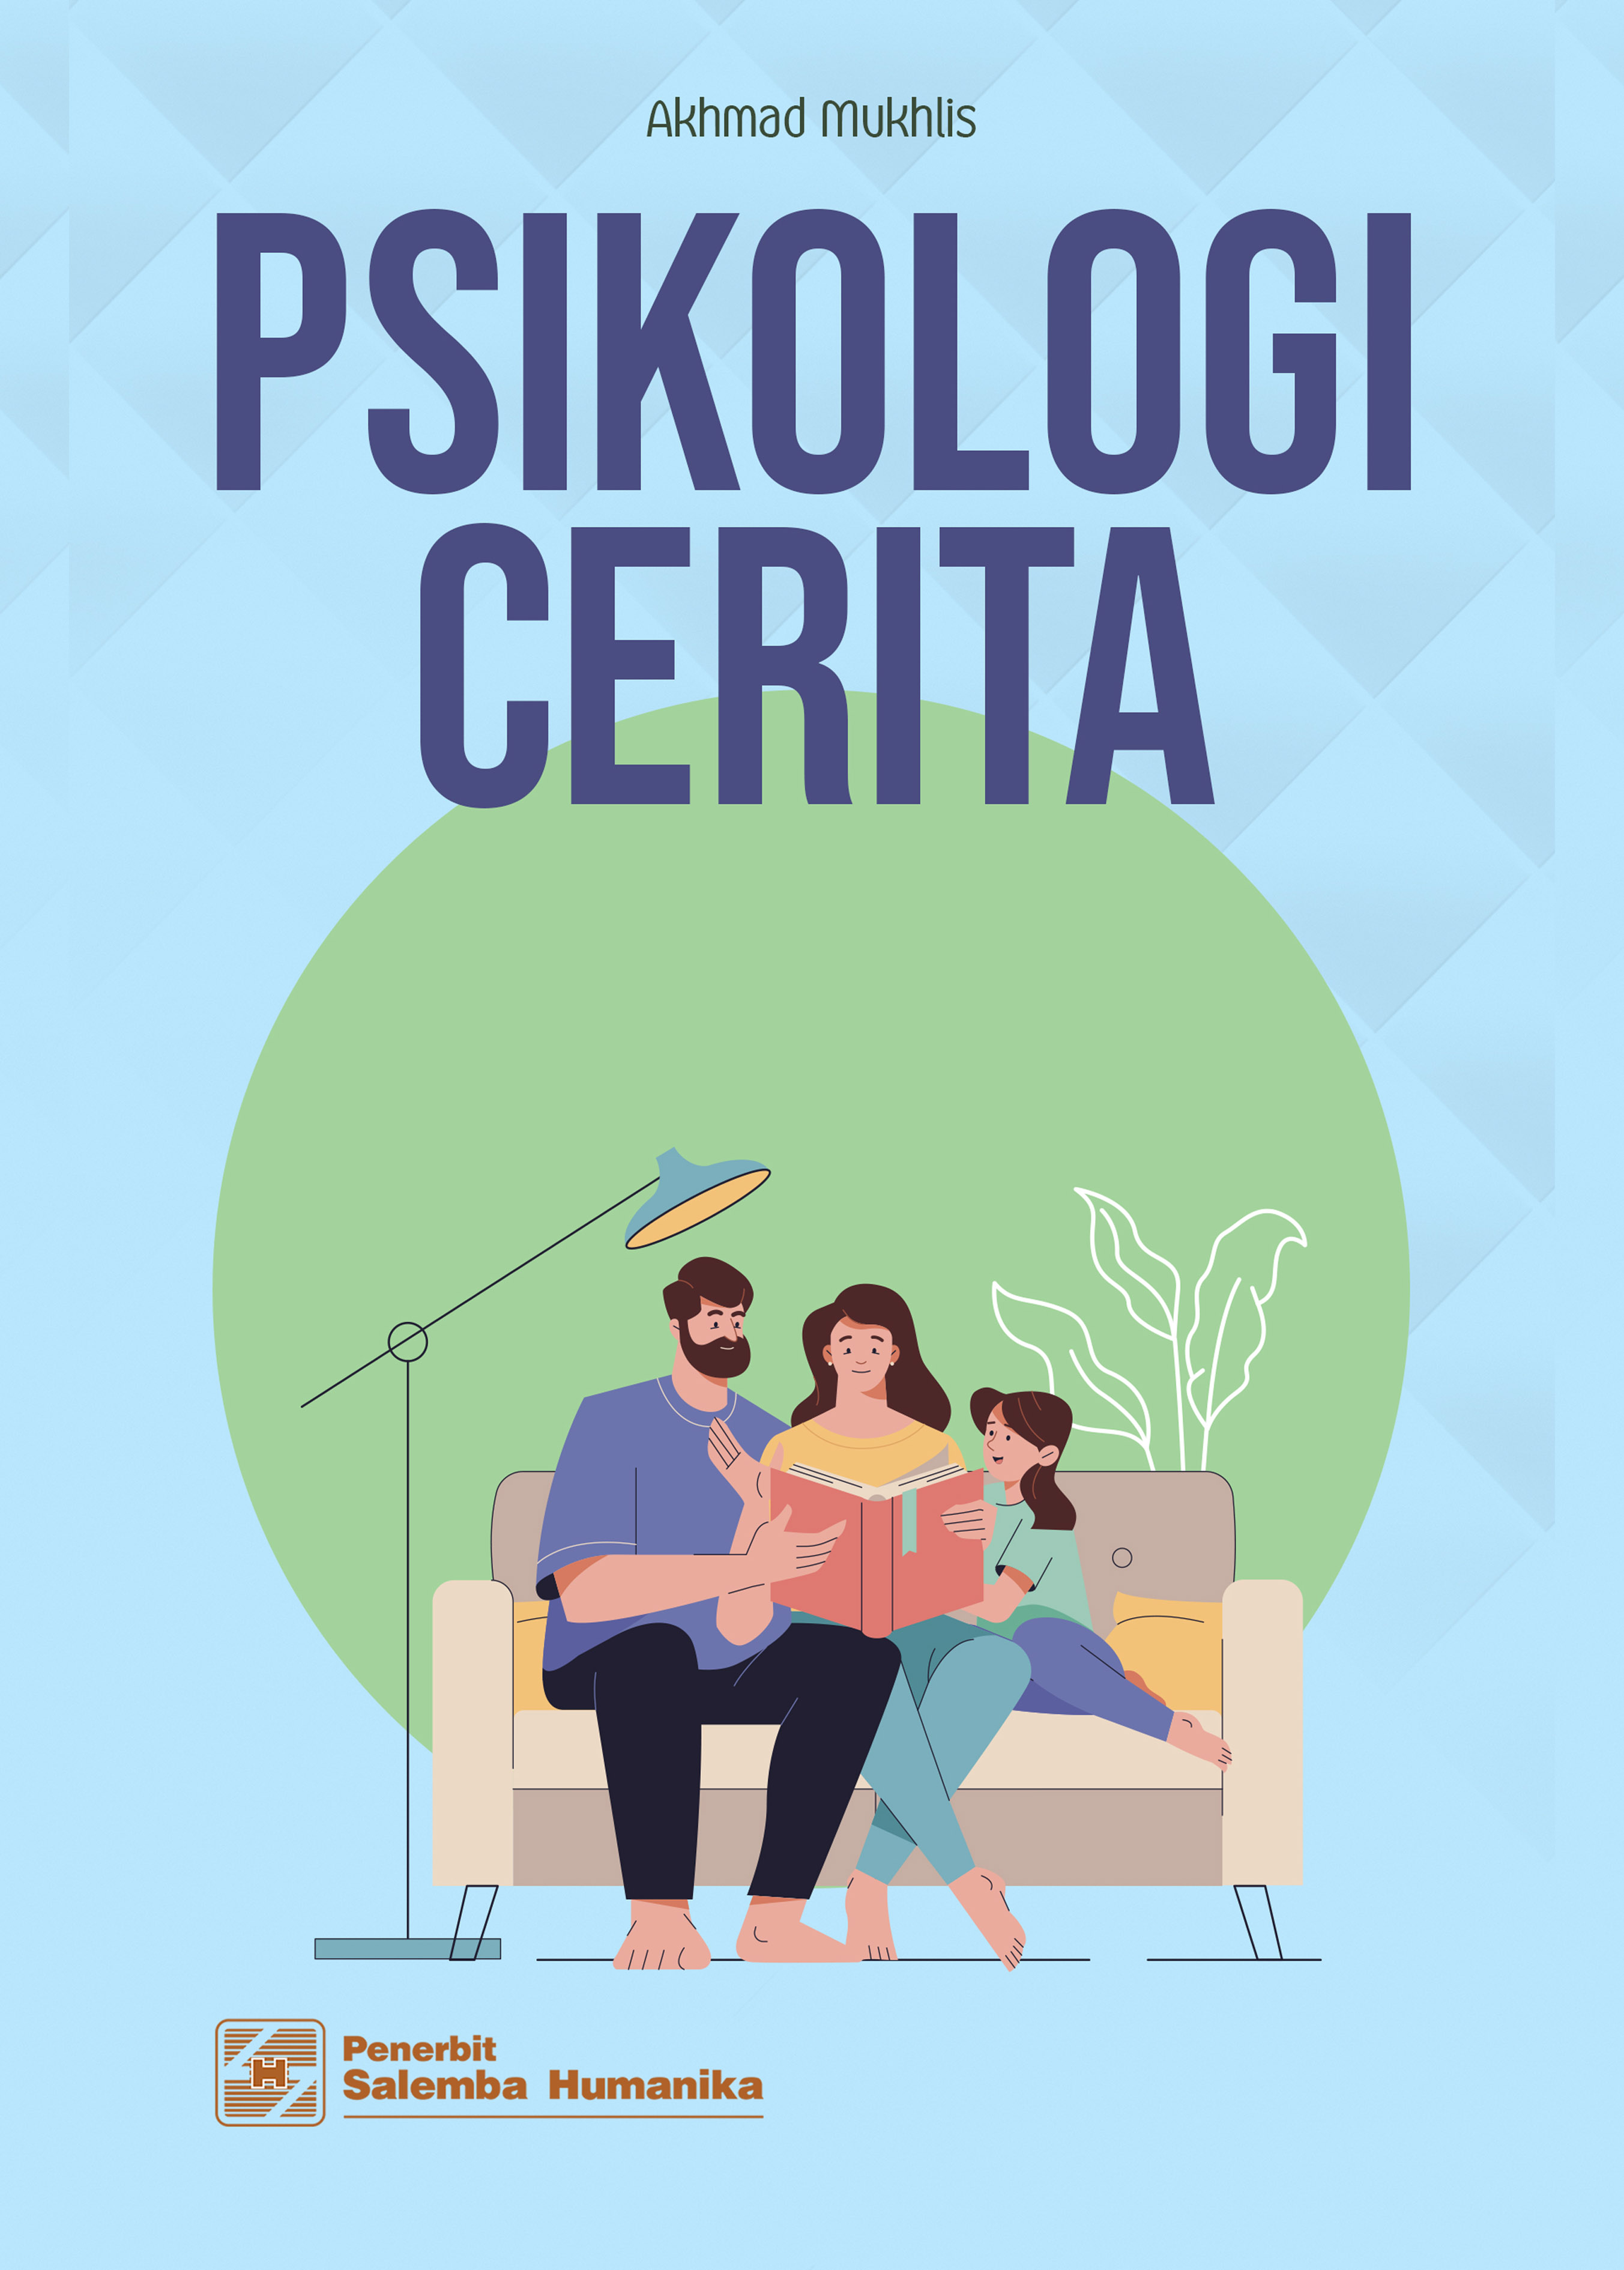 eBook Psikologi Cerita (Akhmad Mukhlis)